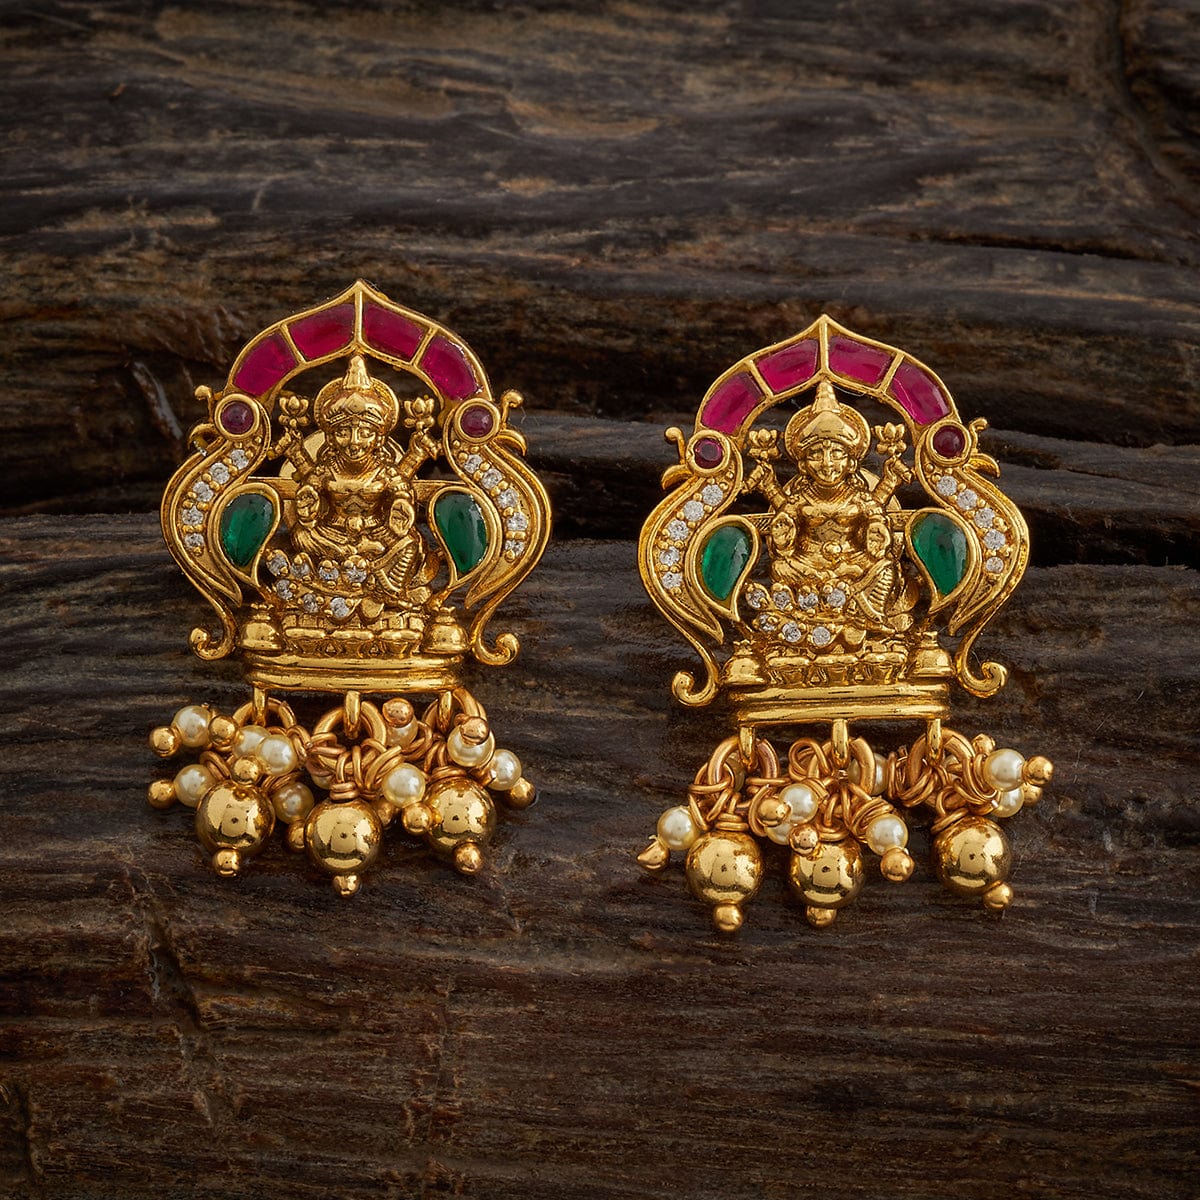 Discover more than 55 lakshmi devi earrings gold